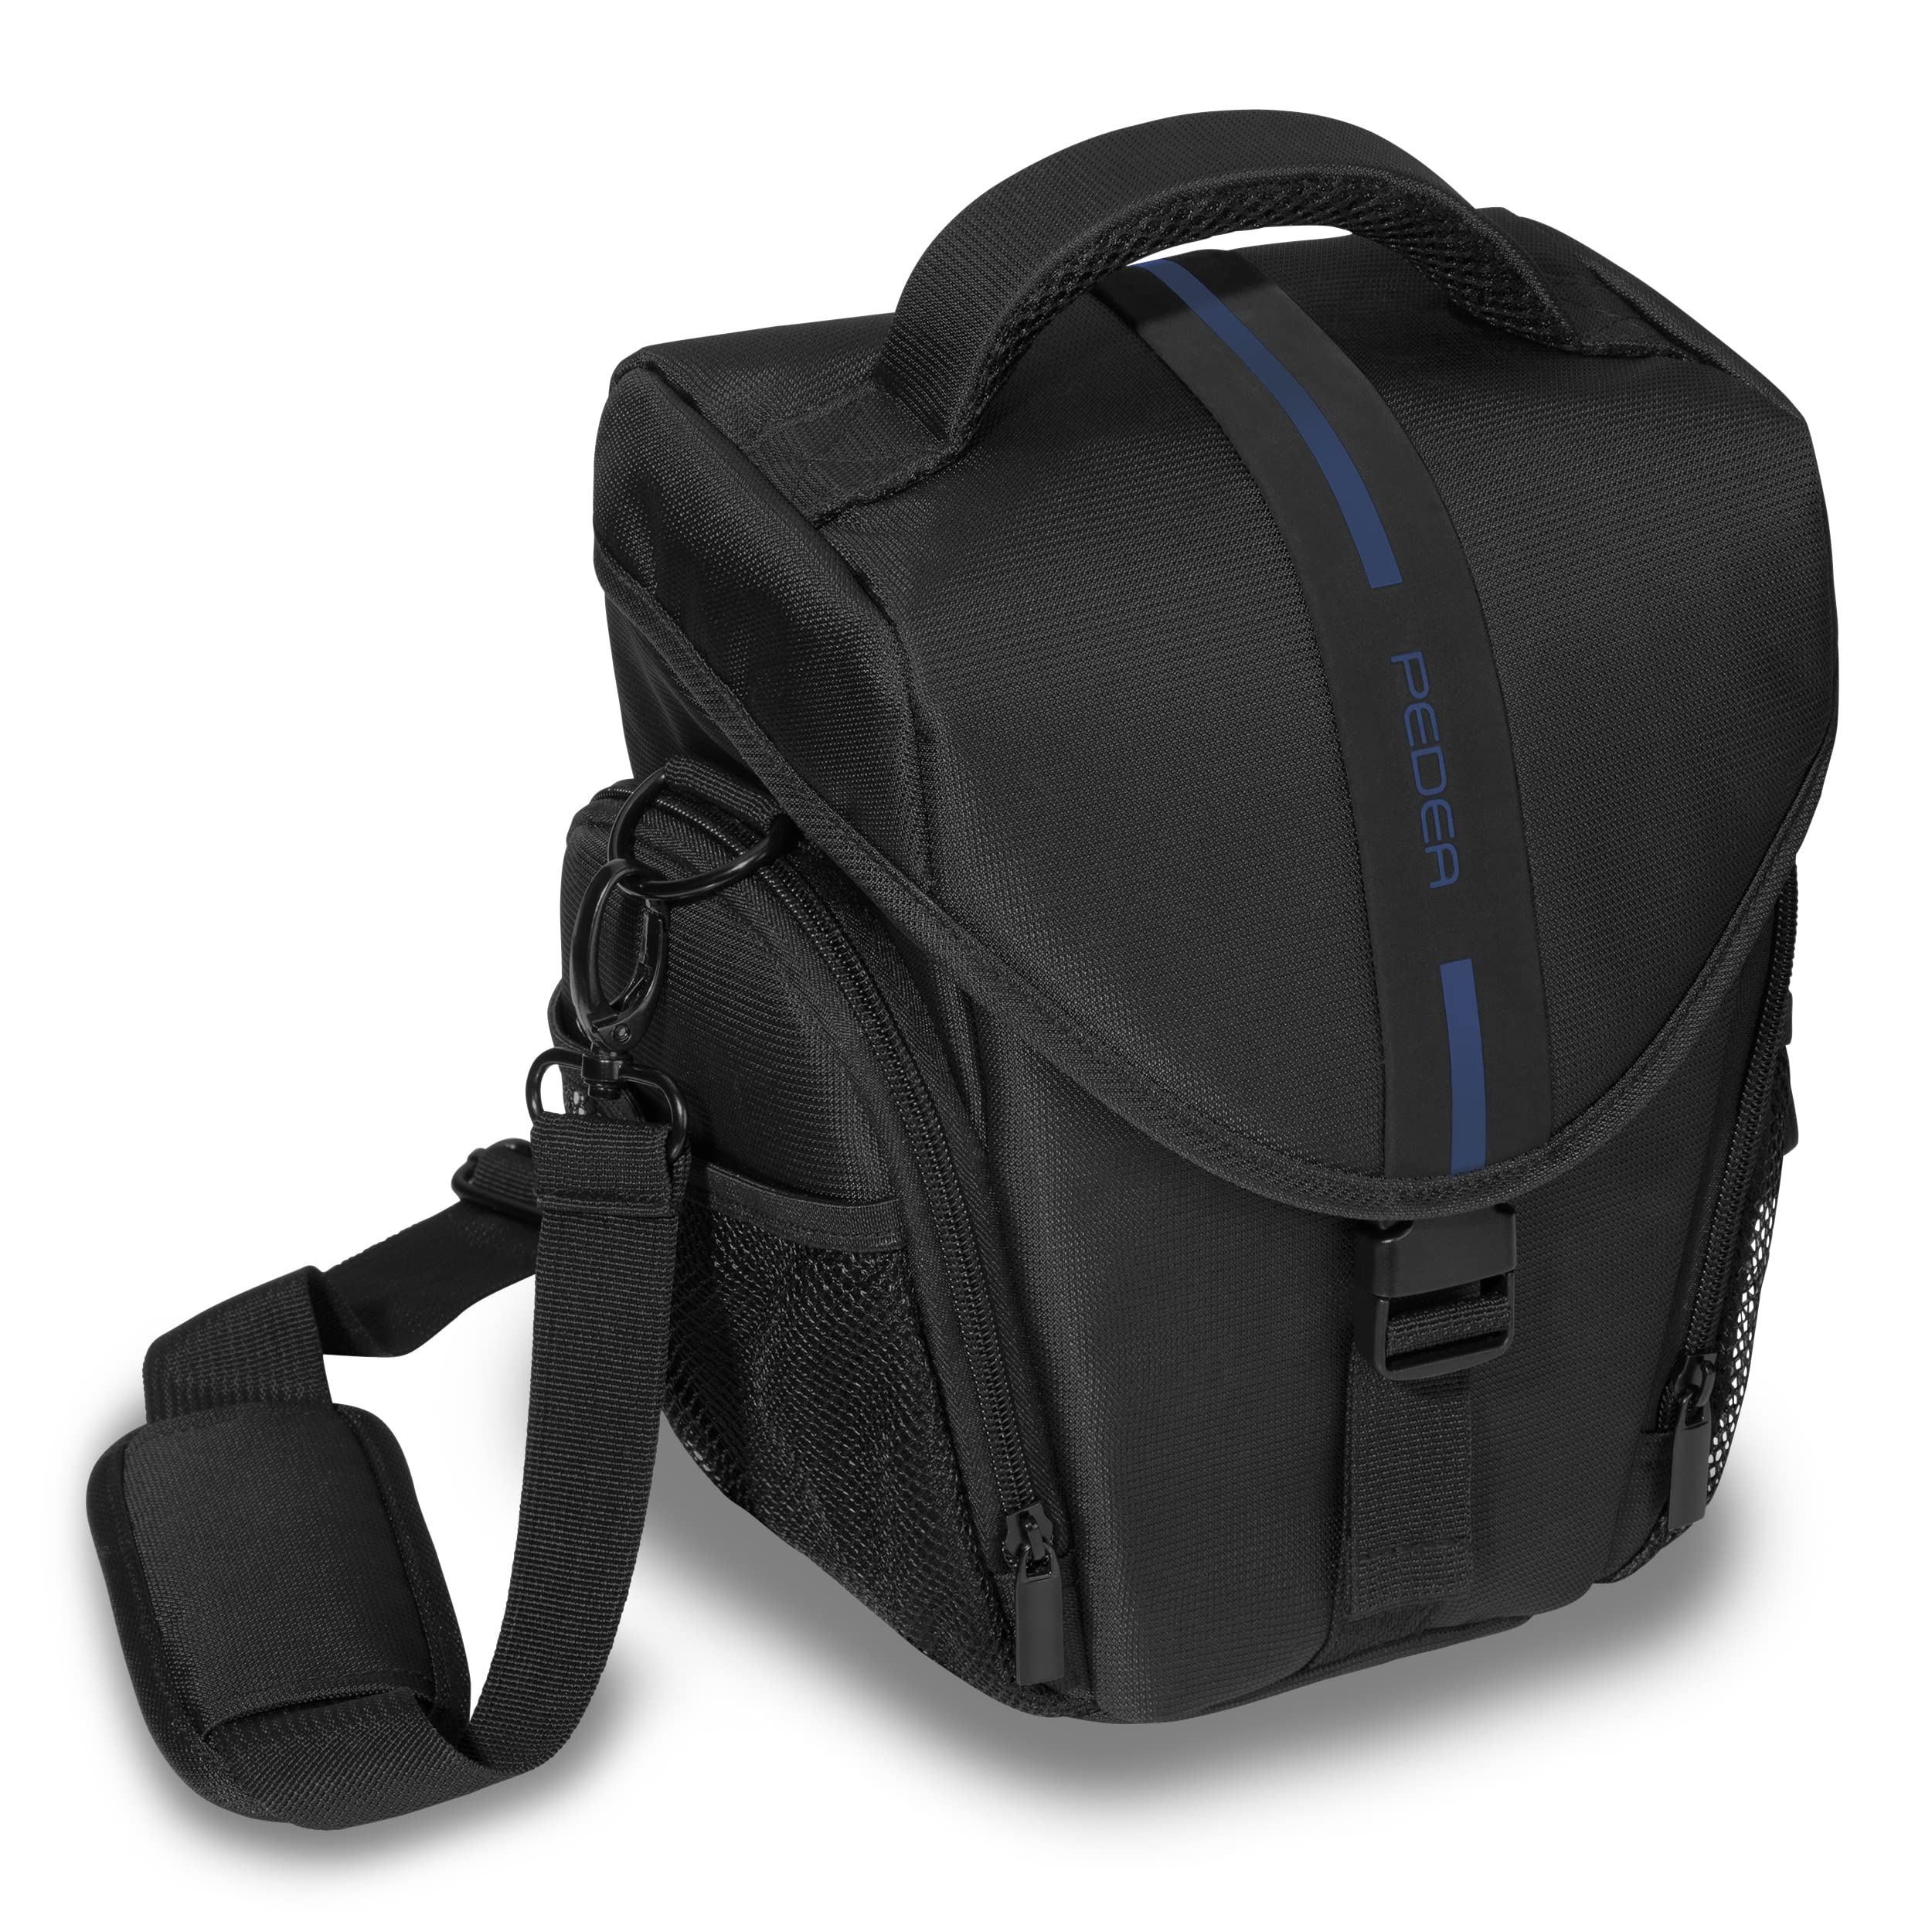 PEDEA DSLR-Kameratasche *Essex* Fototasche für Spiegelreflexkameras mit wasserdichtem Regenschutz, Tragegurt und Zubehörfächern, Gr. L schwarz/blau